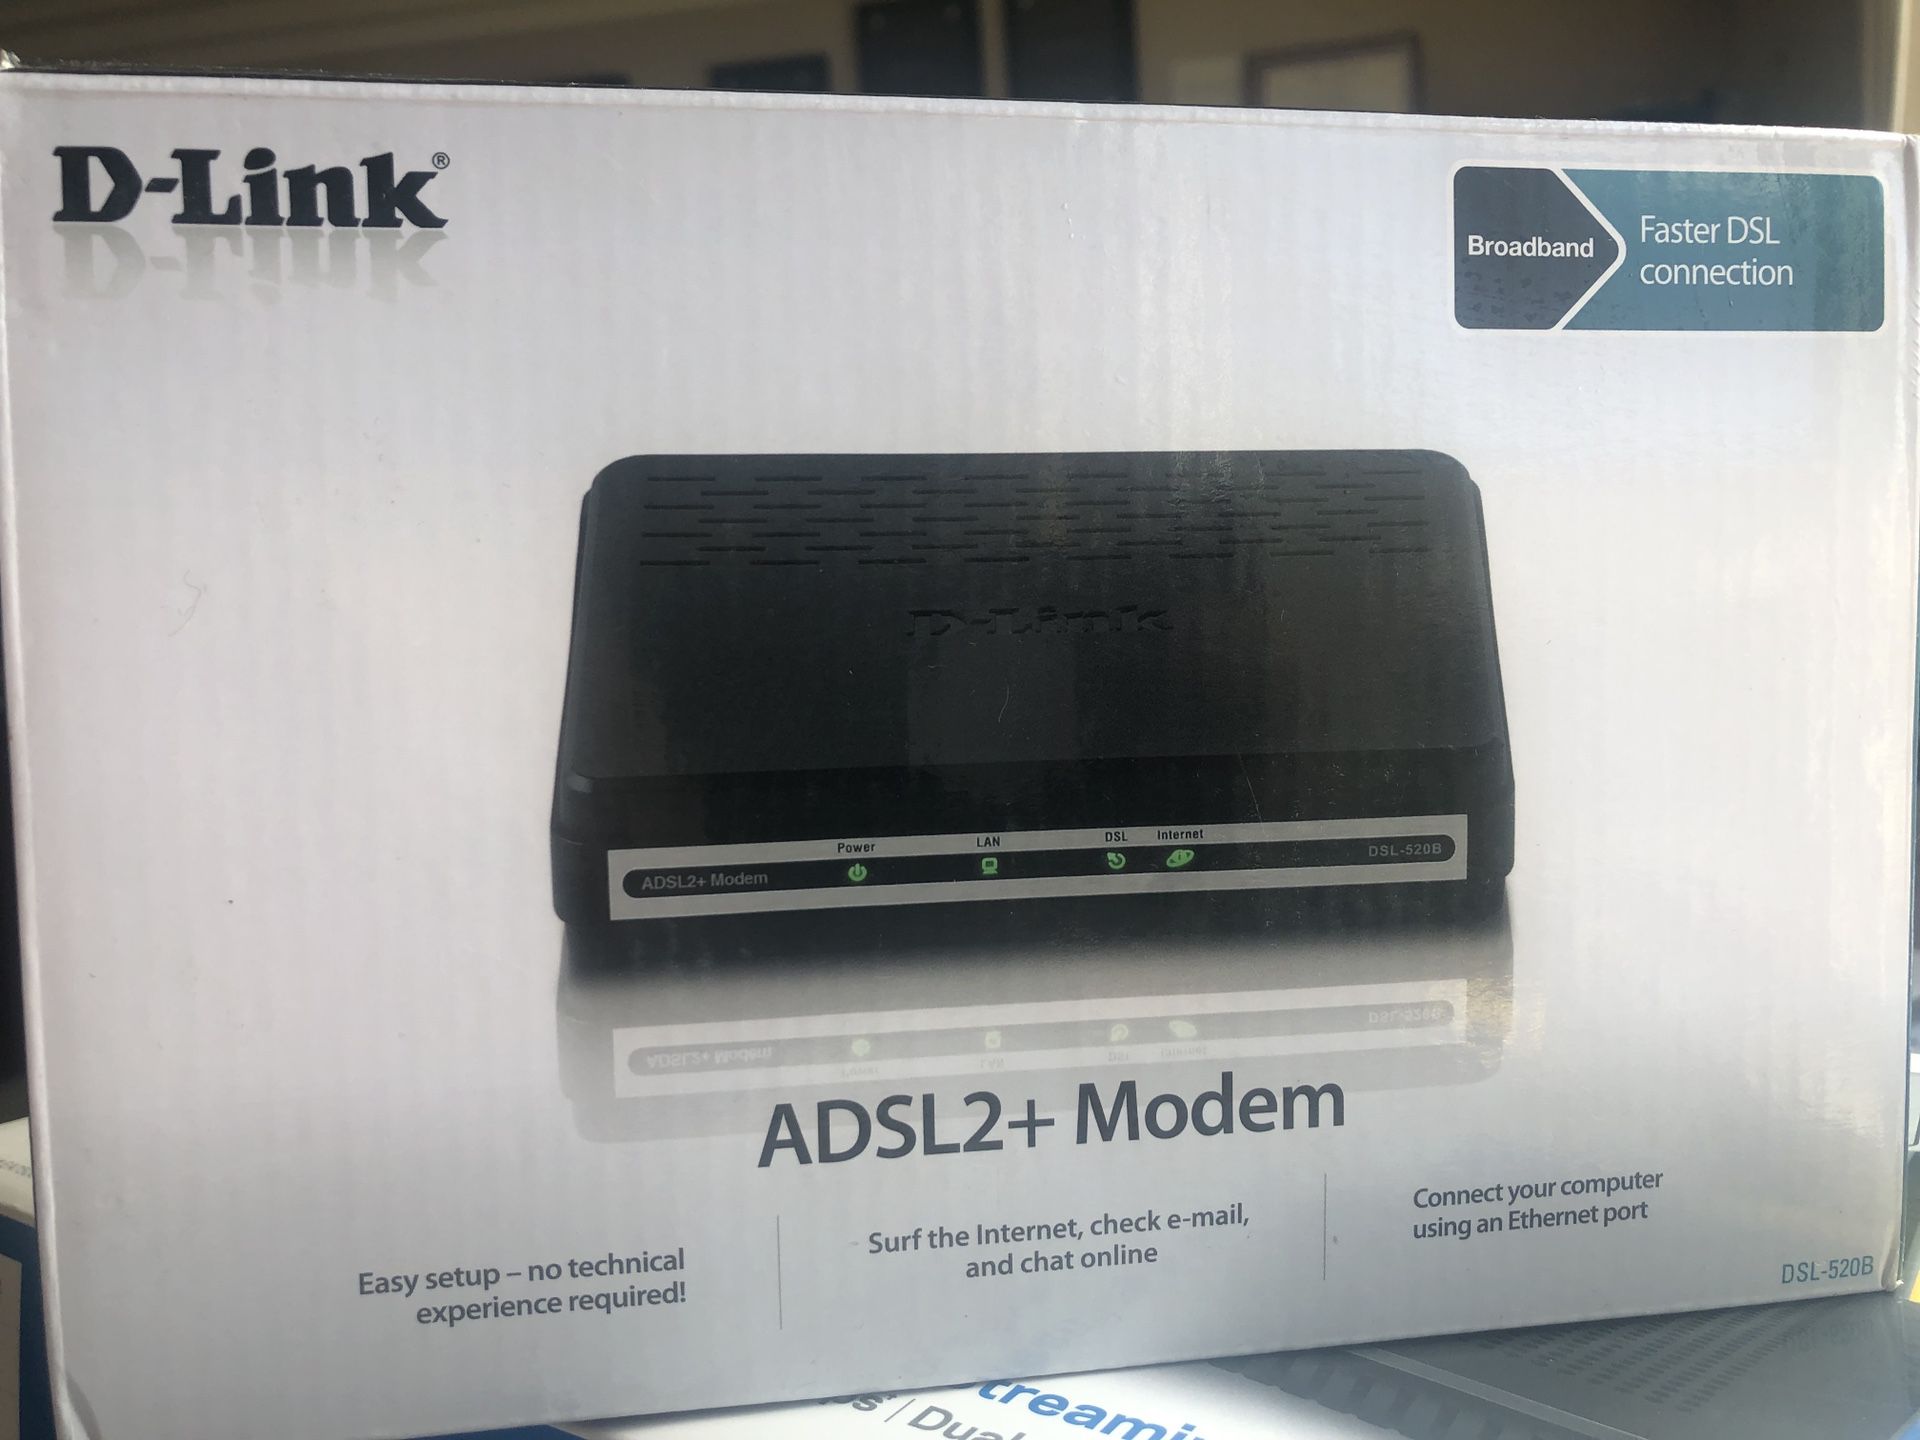 D-Link adsl2+ modem router for internet (dsl-520b)